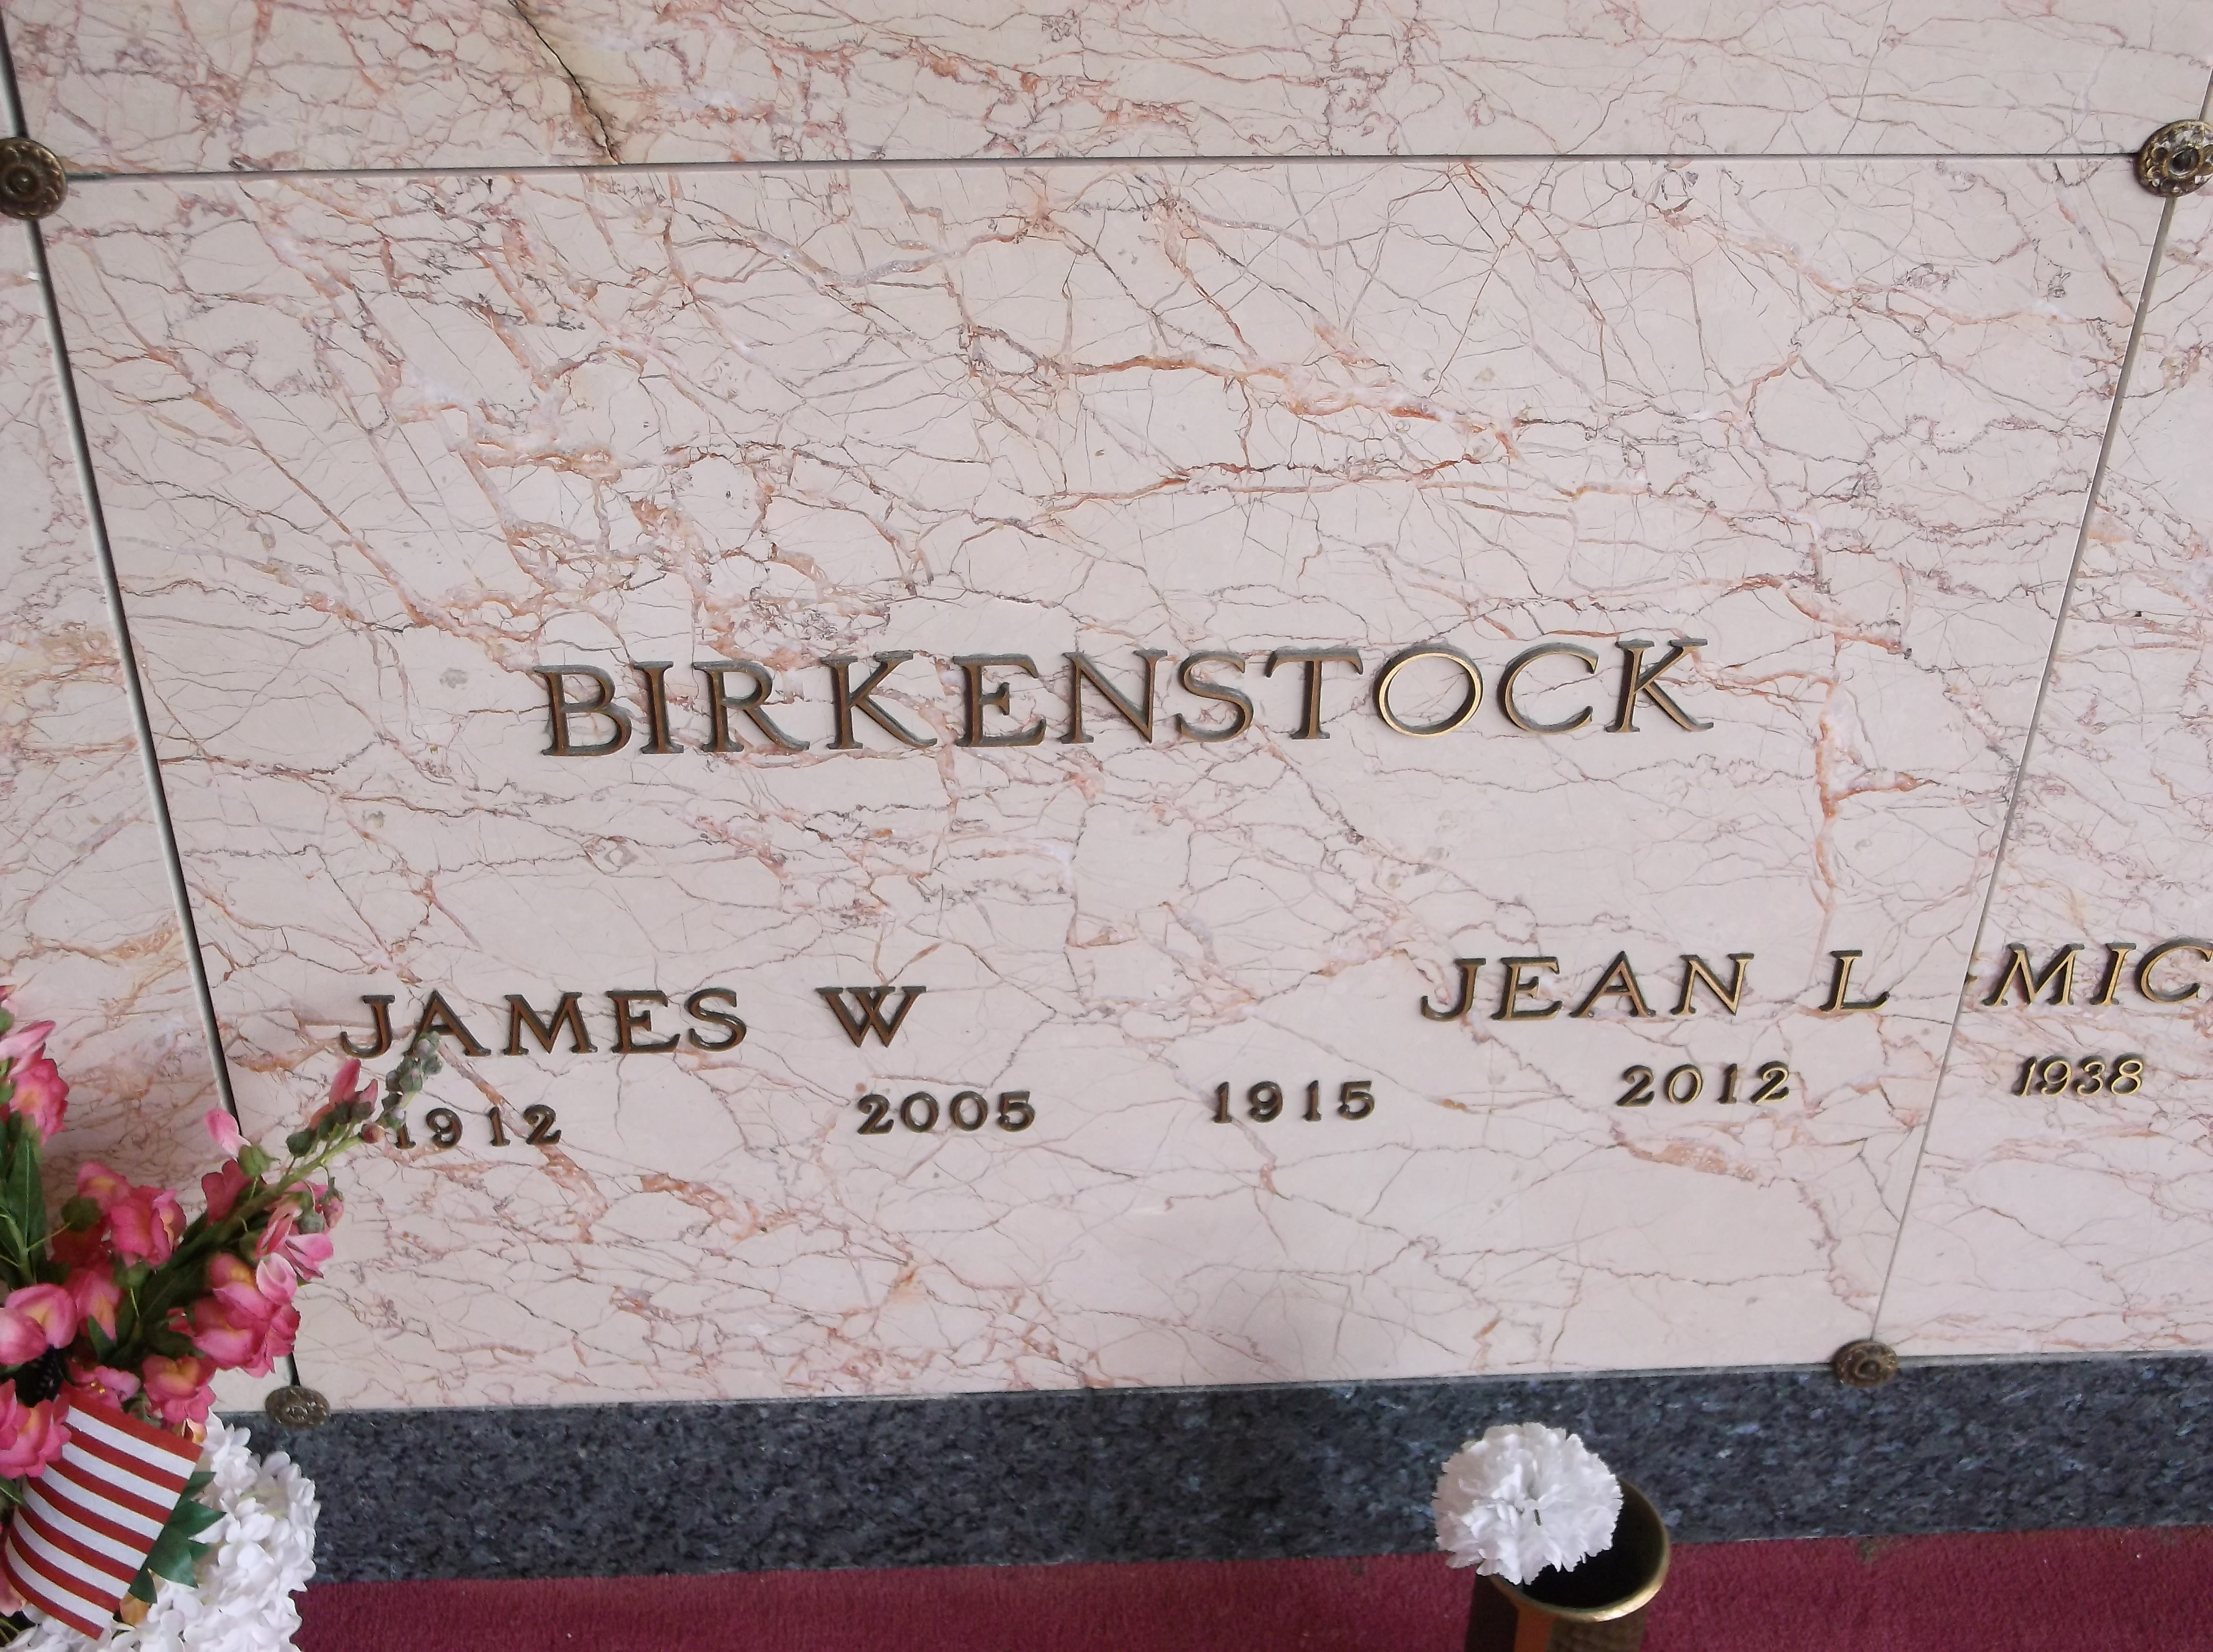 James W Birkenstock